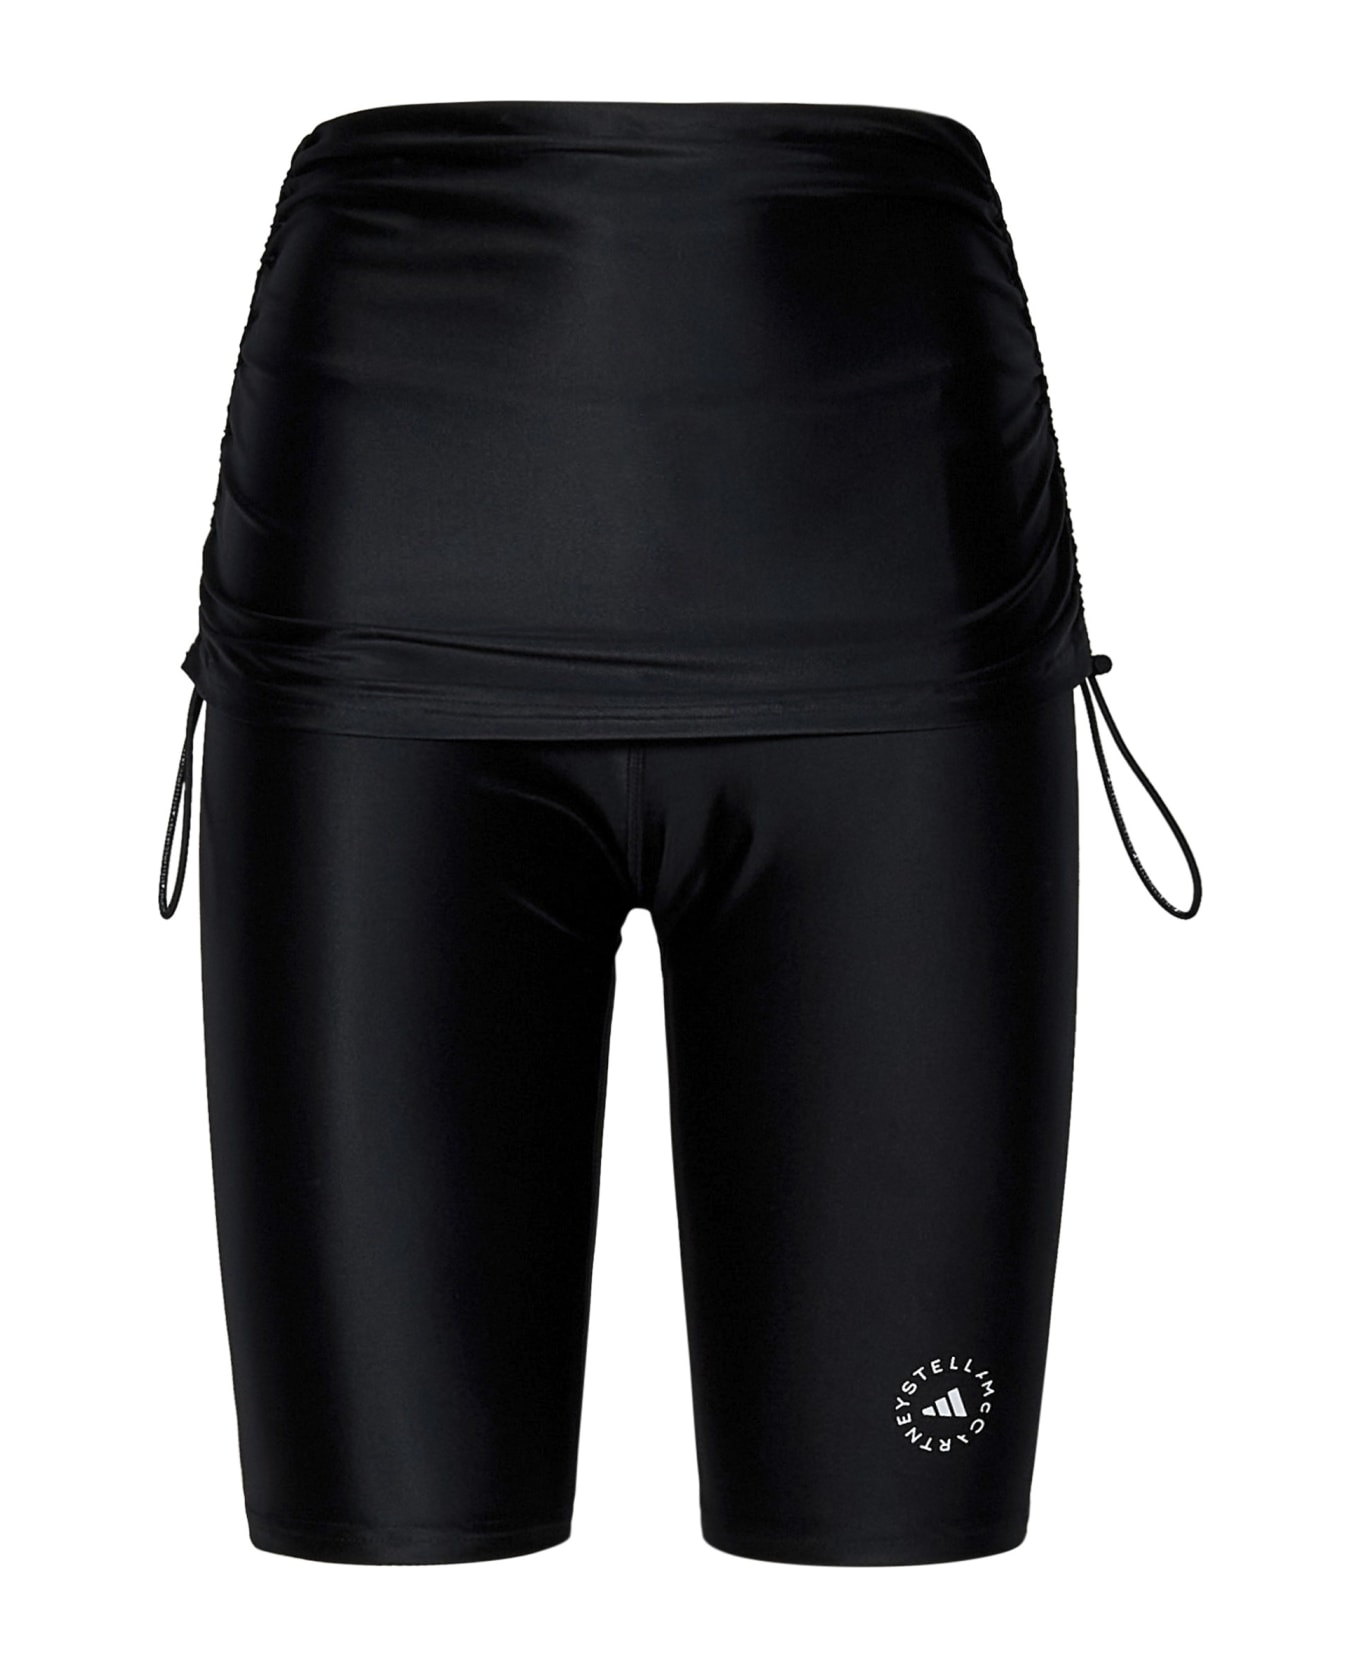 Adidas by Stella McCartney Shorts - Black